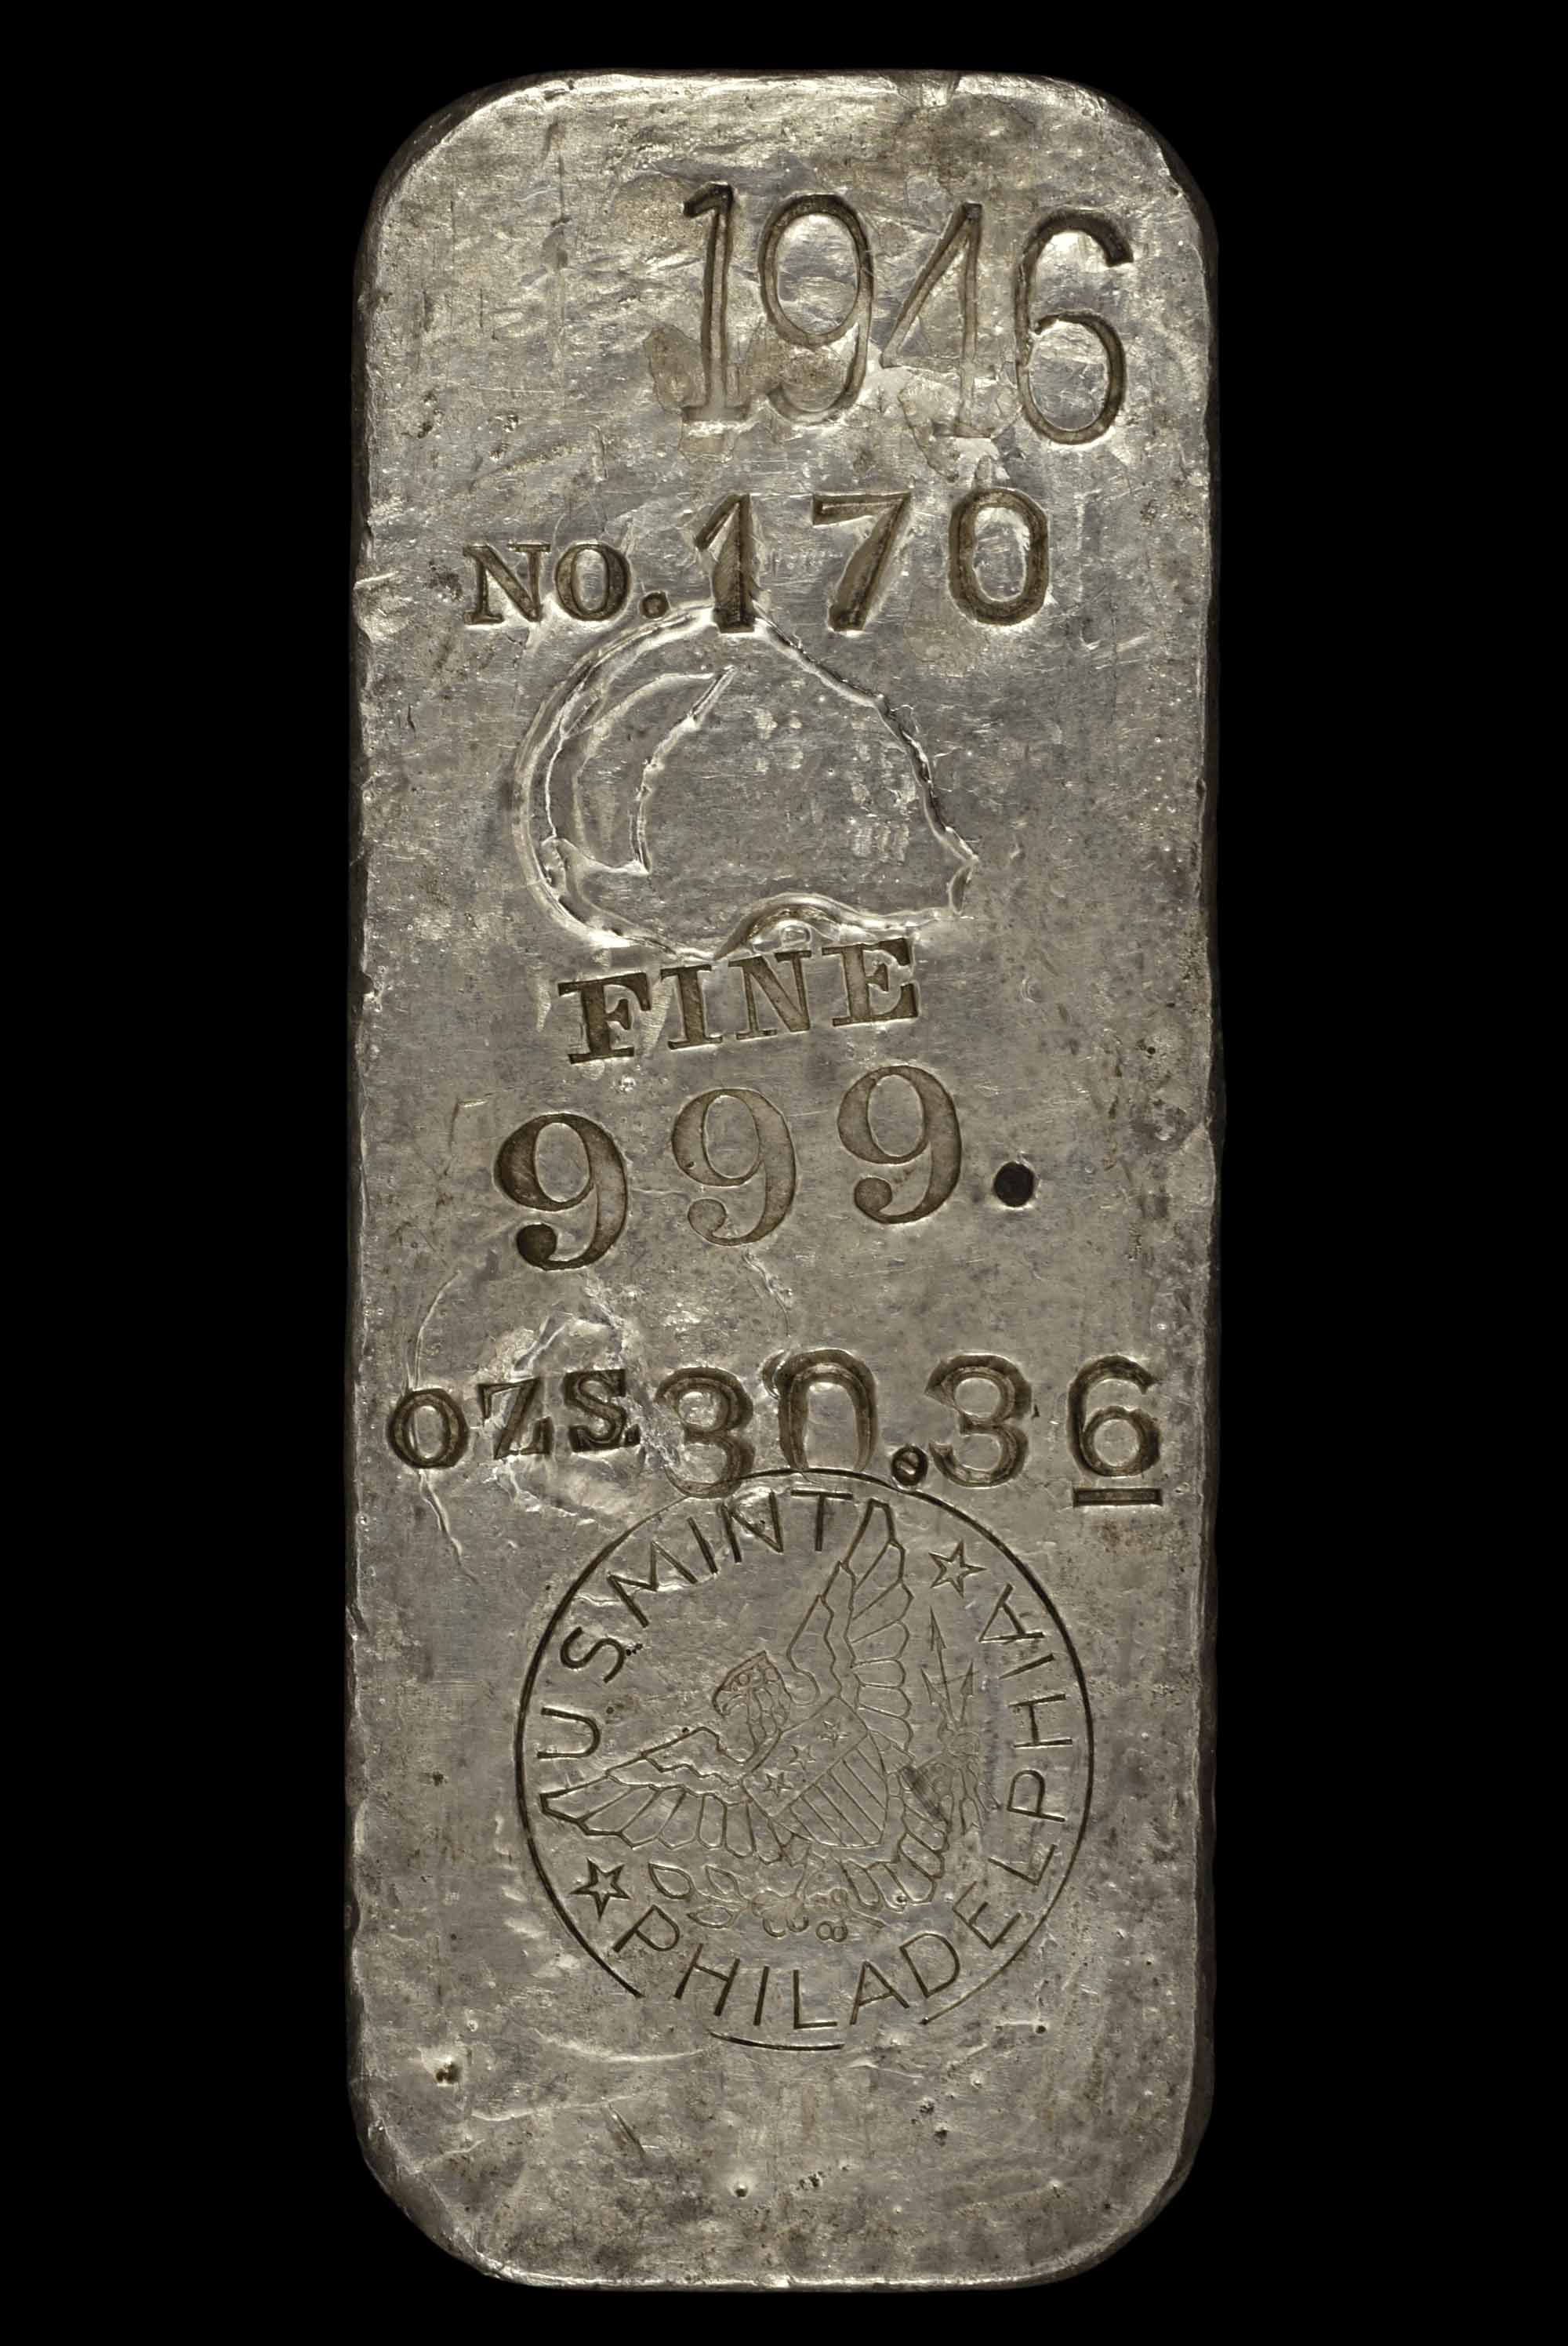 1946 U.S. Mint Philadelphia No. 170, 30.36 ozs (o)